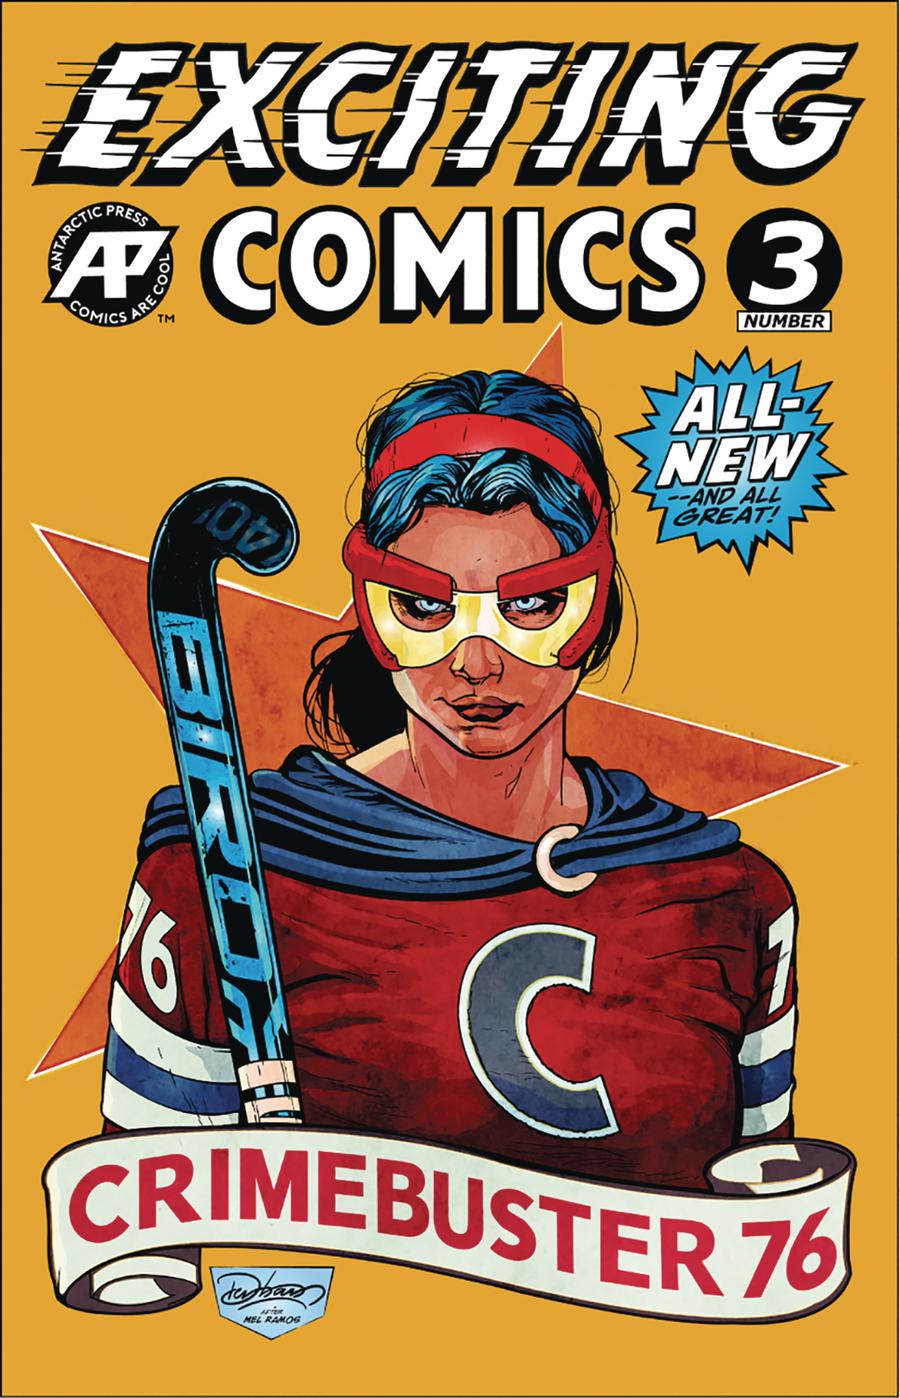 Exciting Comics Vol 2 #3 Cover A Regular Cover